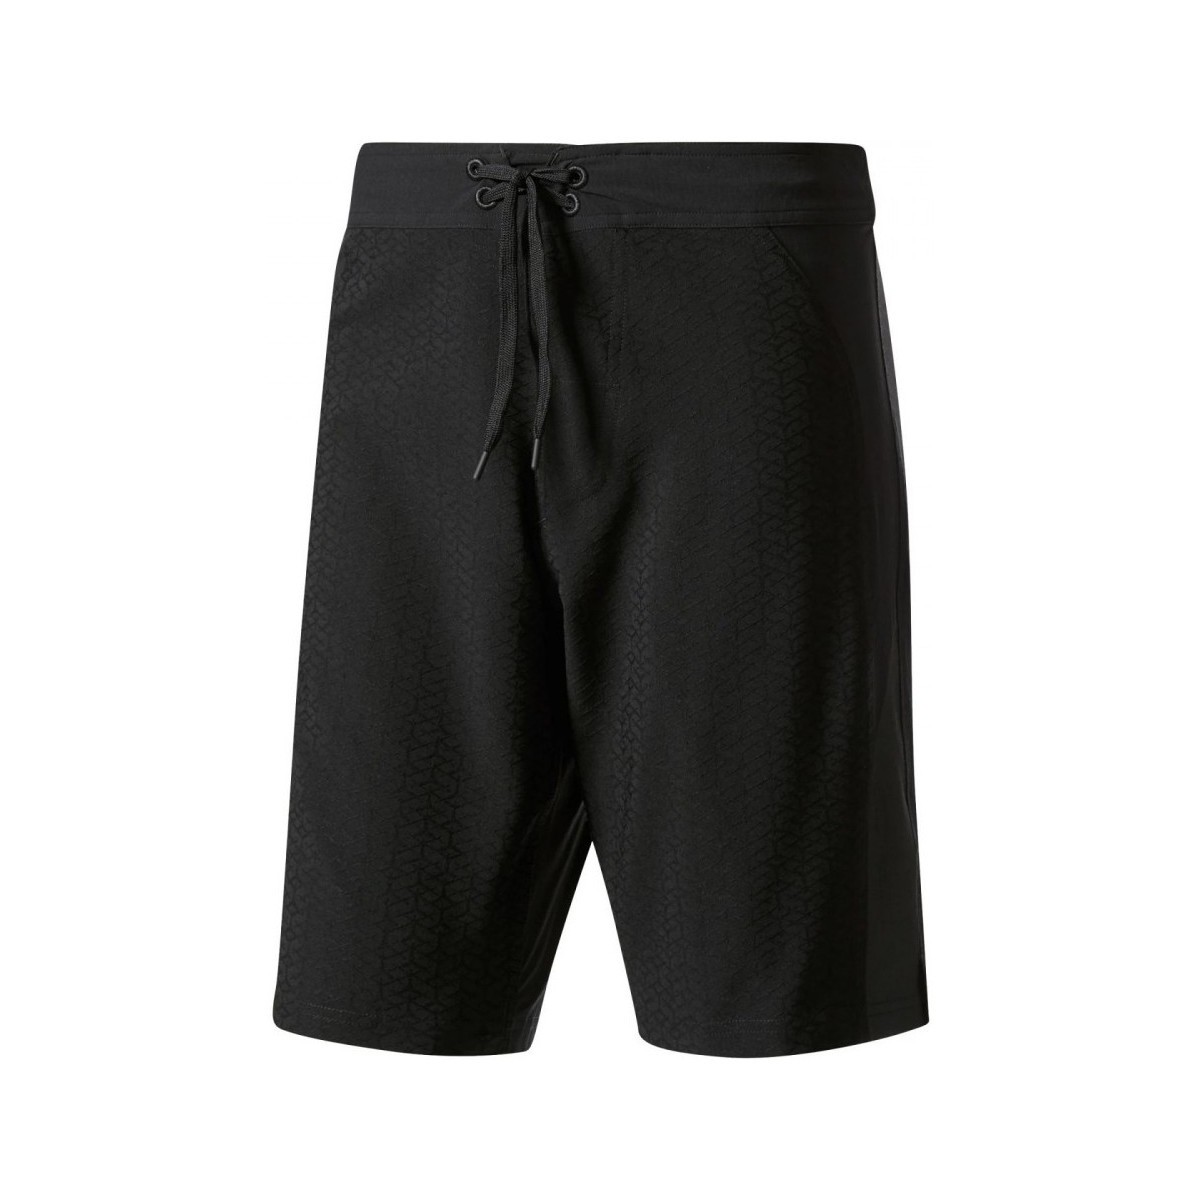 Textiel Heren Korte broeken / Bermuda's adidas Originals Crazytrain Ultra Strong Zwart